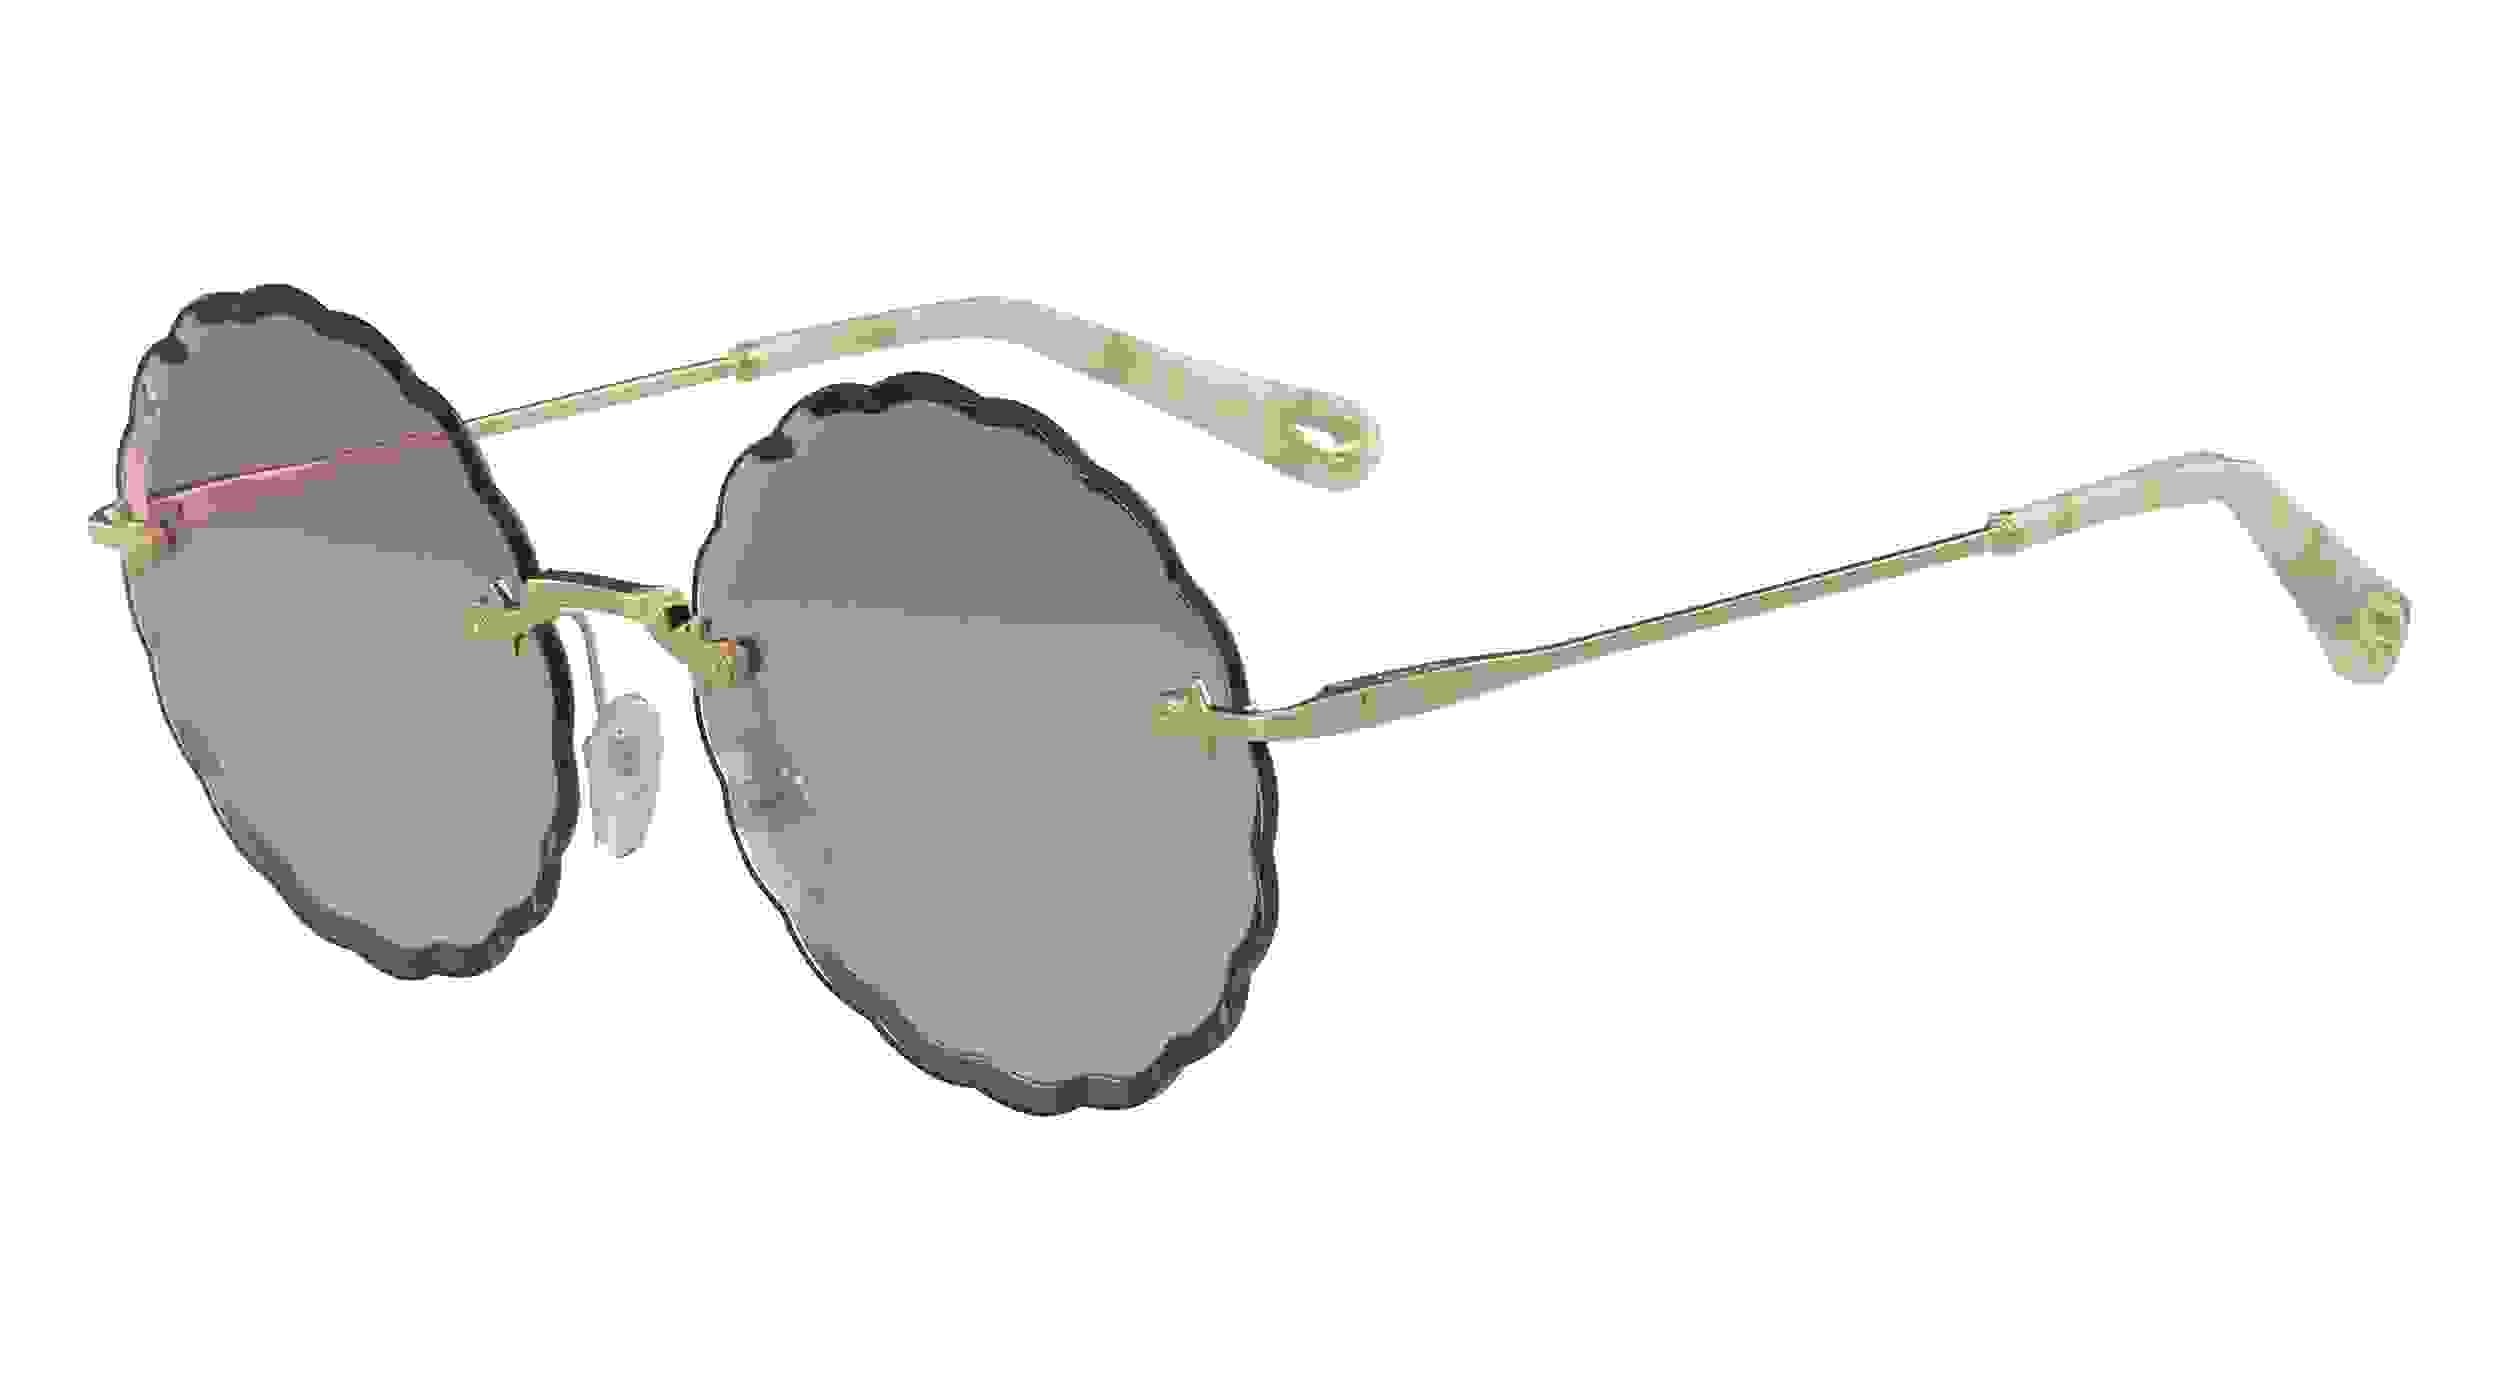 Runde Sonnenbrille von Cloé mit dunklen Applikationen am Rahmen, lila getönten Brillengläsern und goldenen Bügeln.